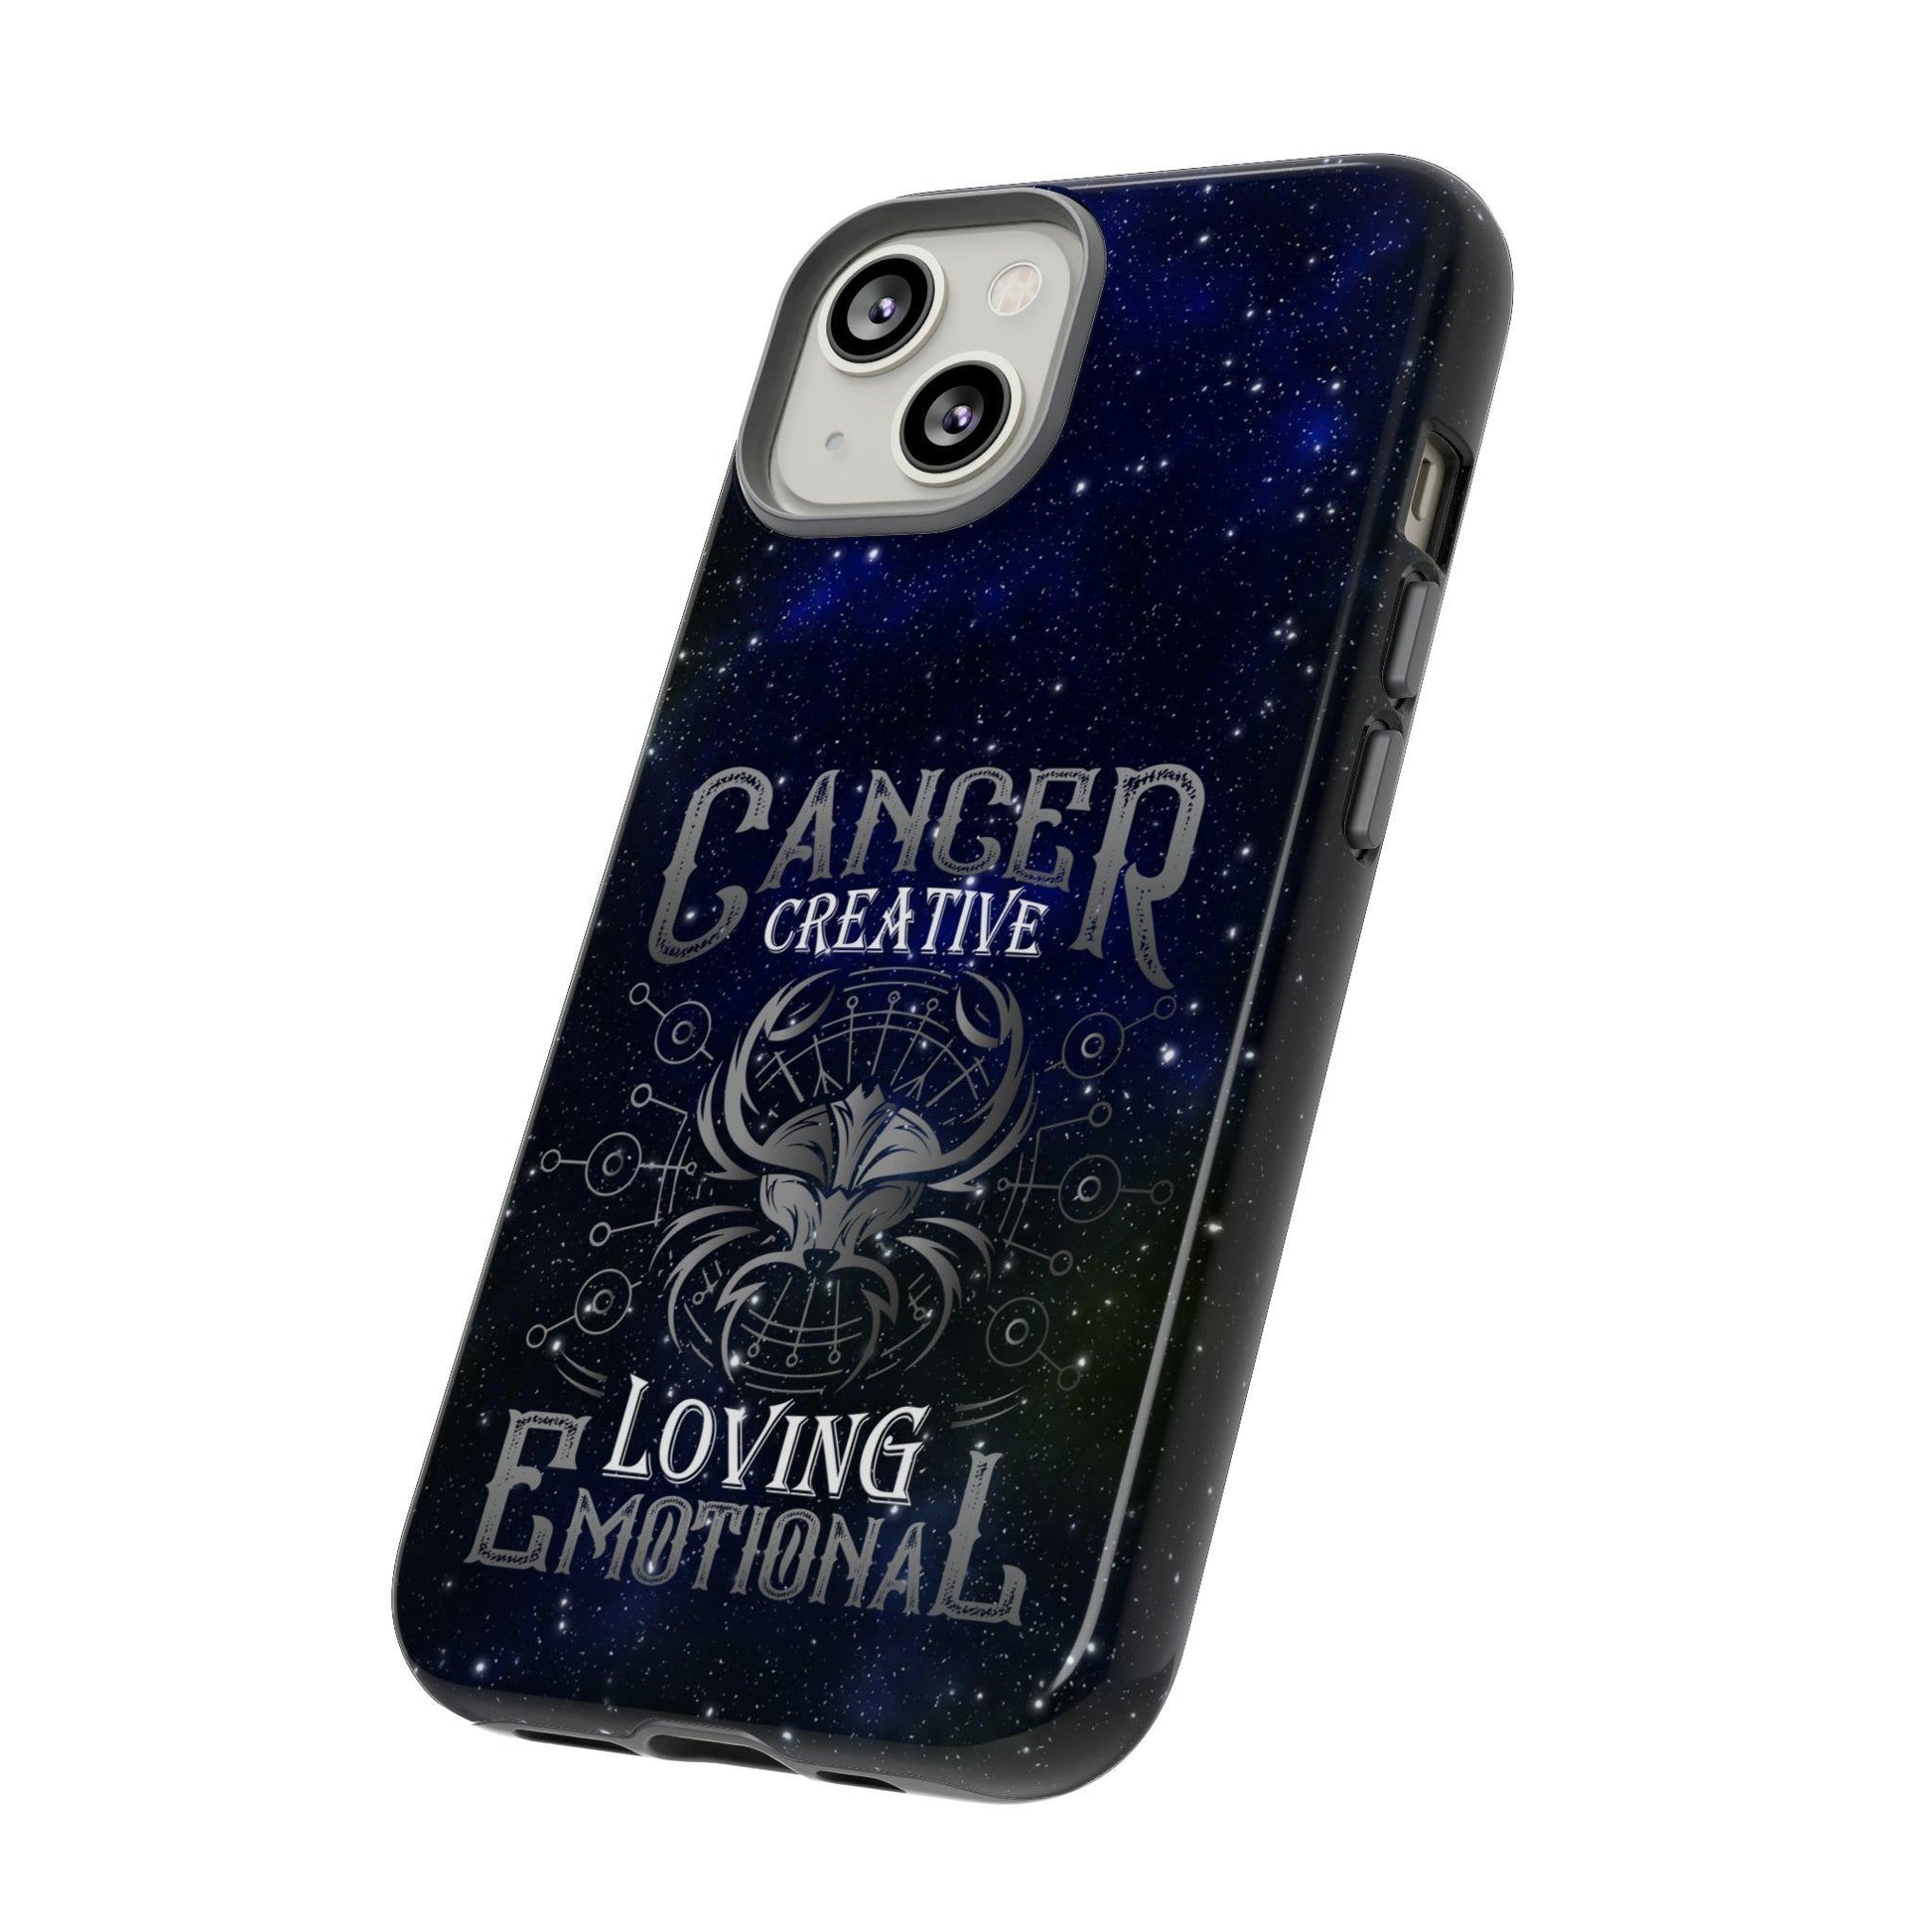 Apple Iphone Sternzeichen Cancer Cover -- Apple Iphone Sternzeichen Cancer Cover - undefined Phone Case | JLR Design